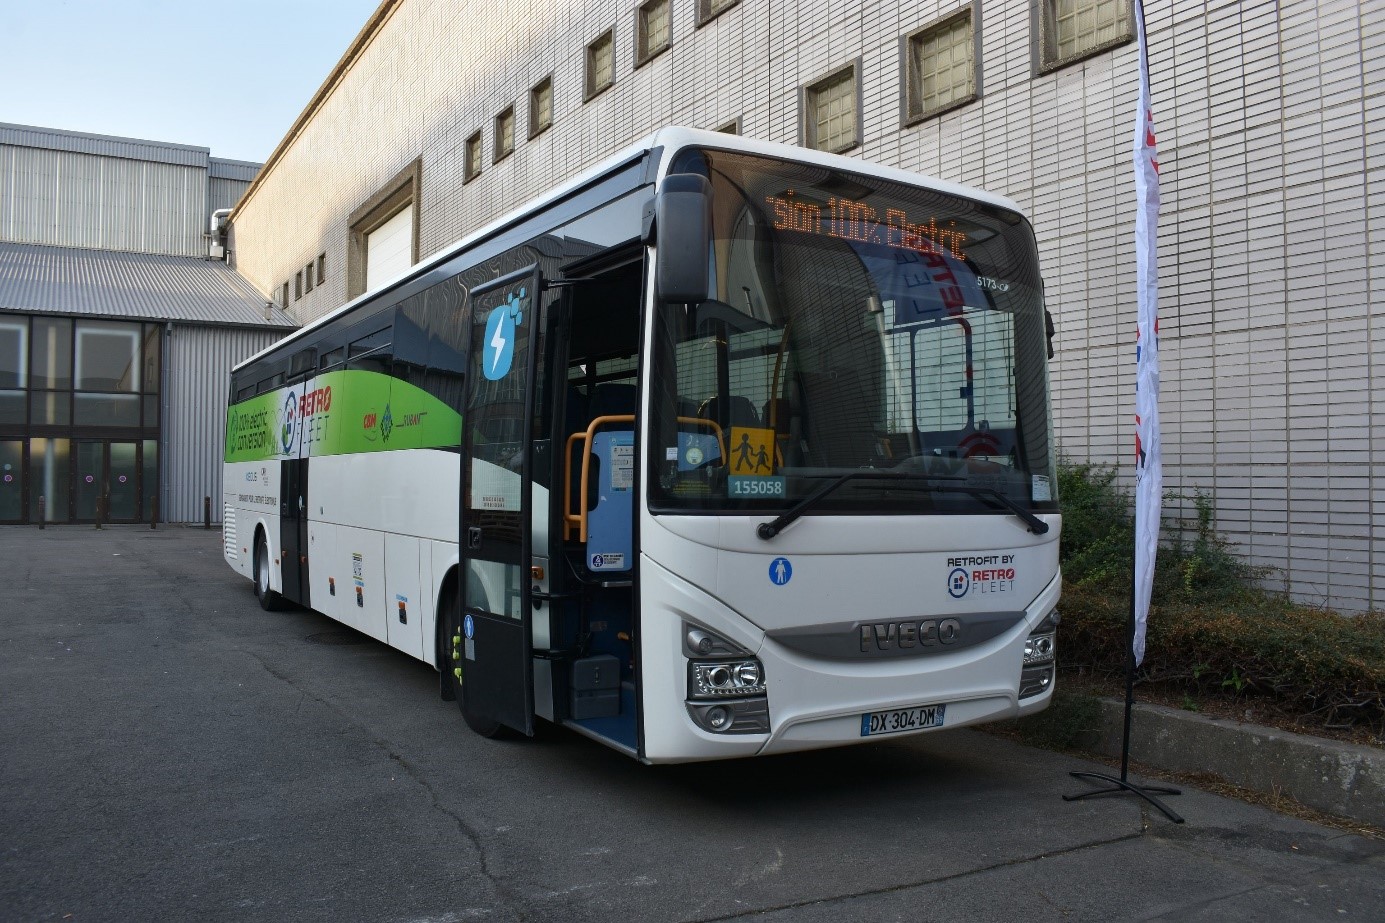 Na první pohled typický francouzský školní autobus. Až detailnější zkoumání odhalí, čím je vůz čísla 155058 neobyčejný. (foto: Libor Hinčica)